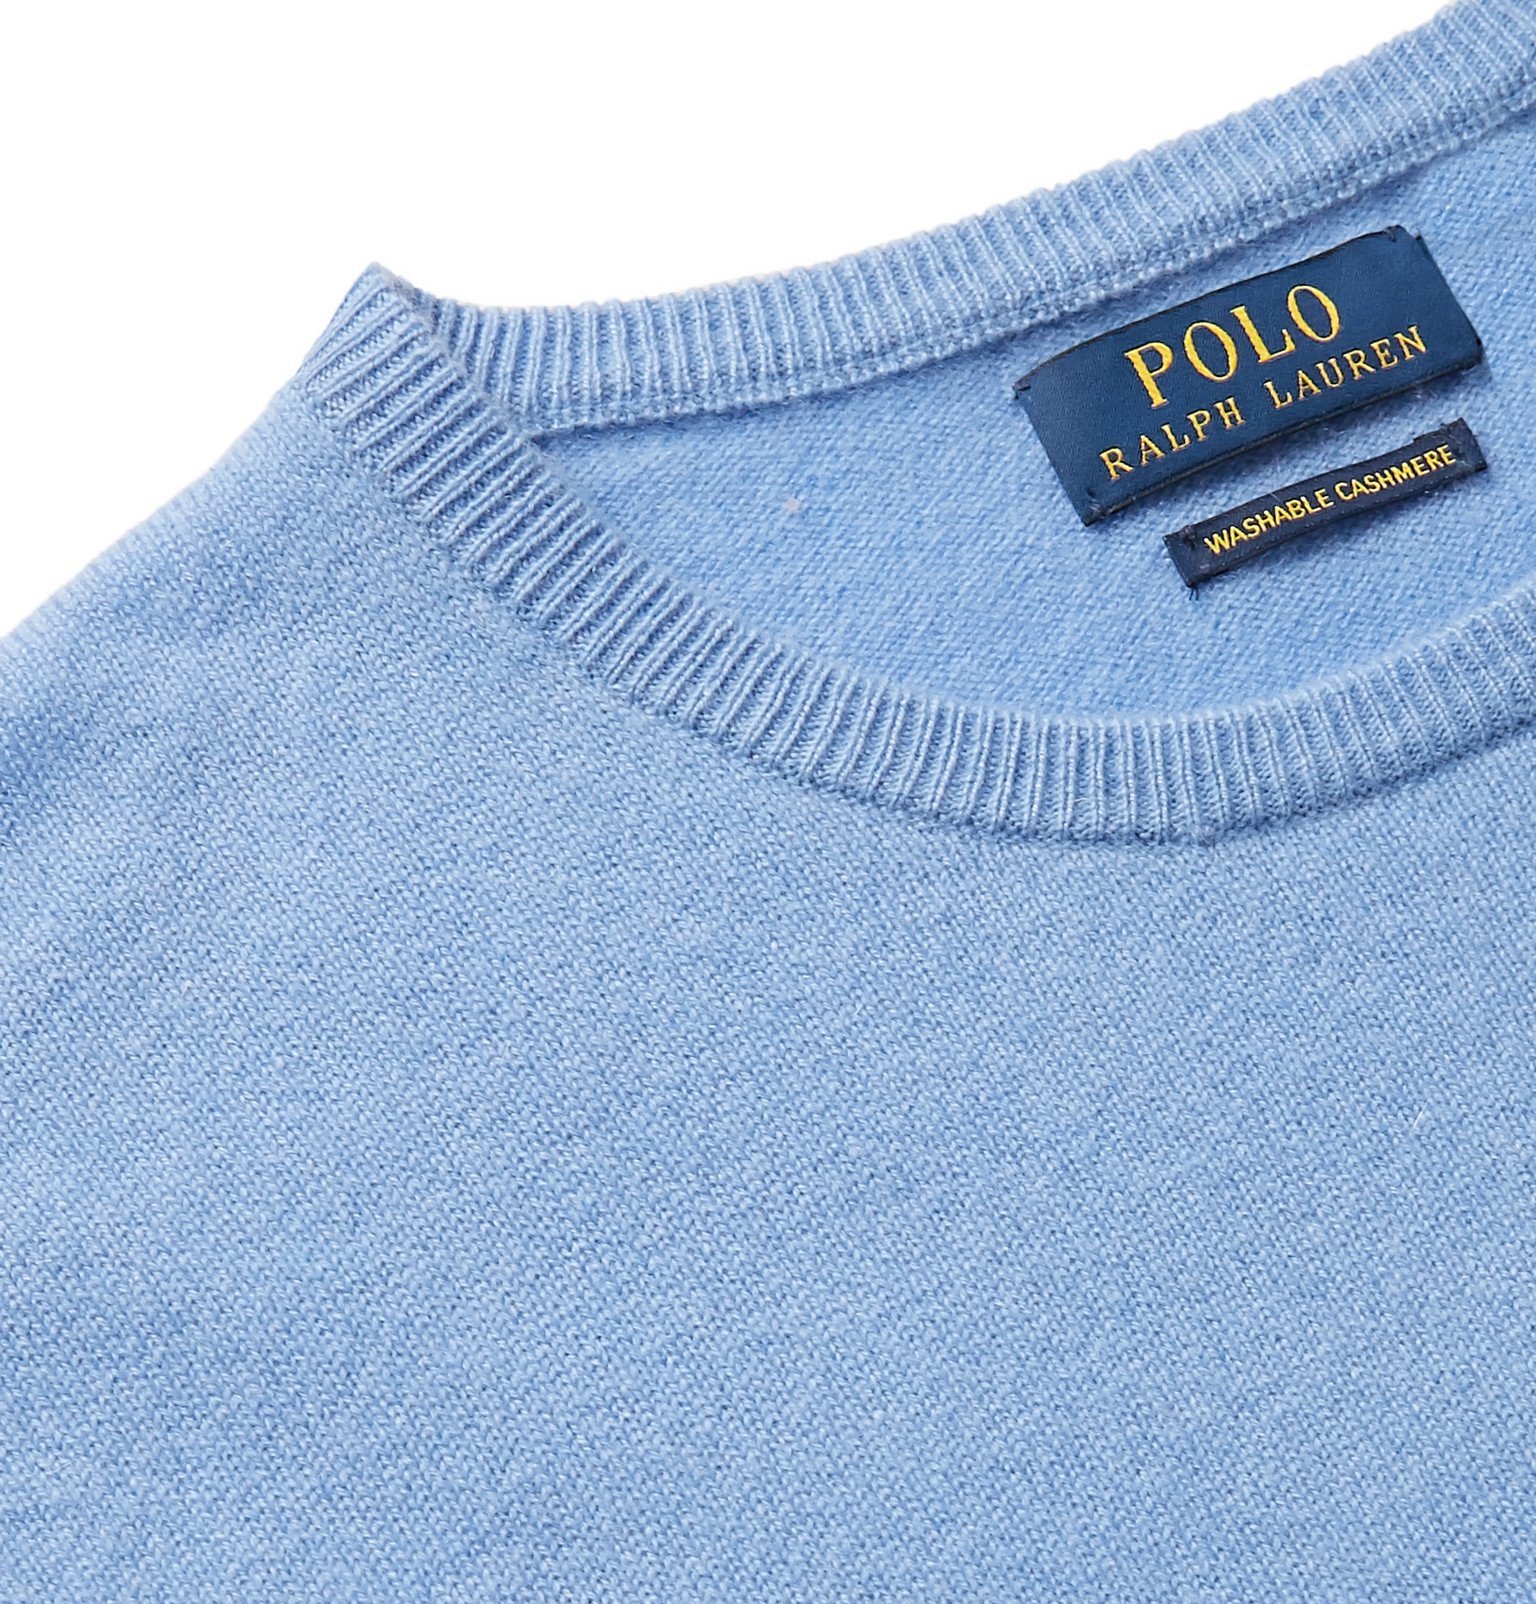 Polo Ralph Lauren - Cashmere Sweater - Blue Polo Ralph Lauren